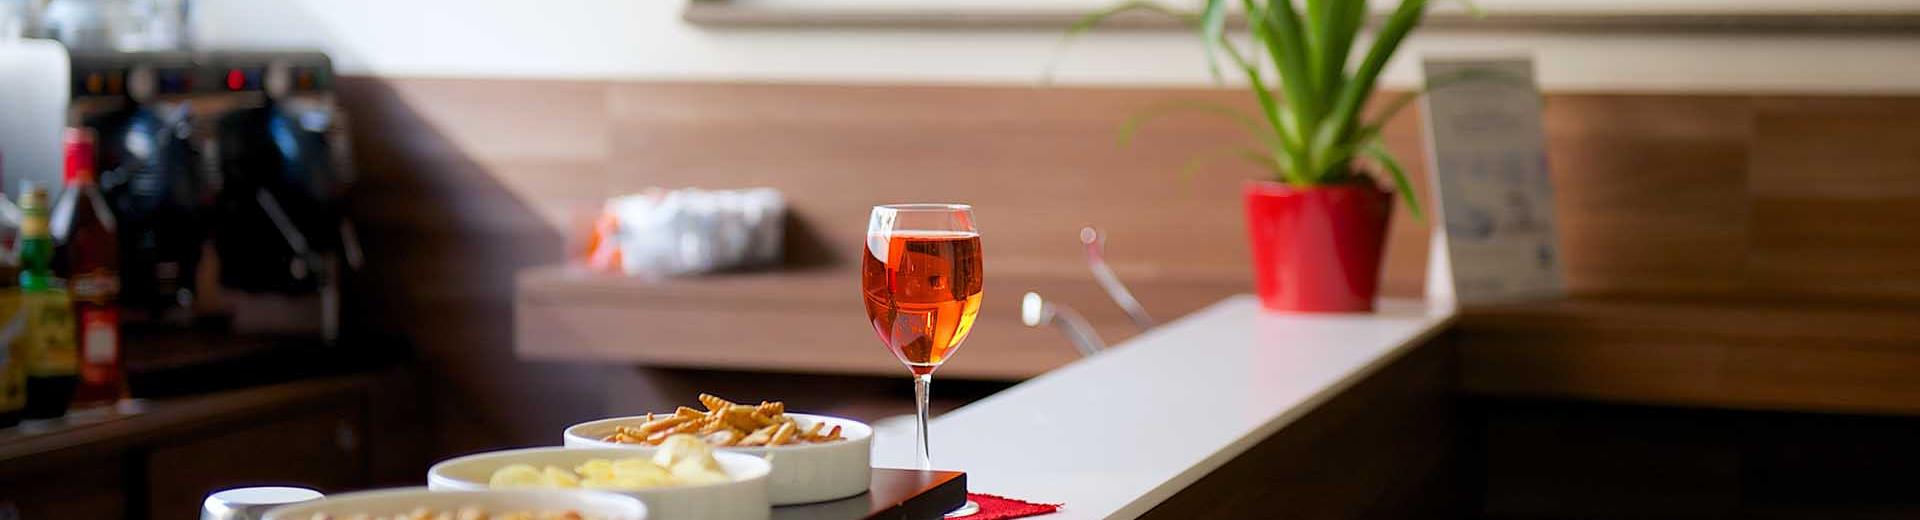 Bar e gustosi aperitivi a Torino -  Best Western Hotel Luxor 3 stelle